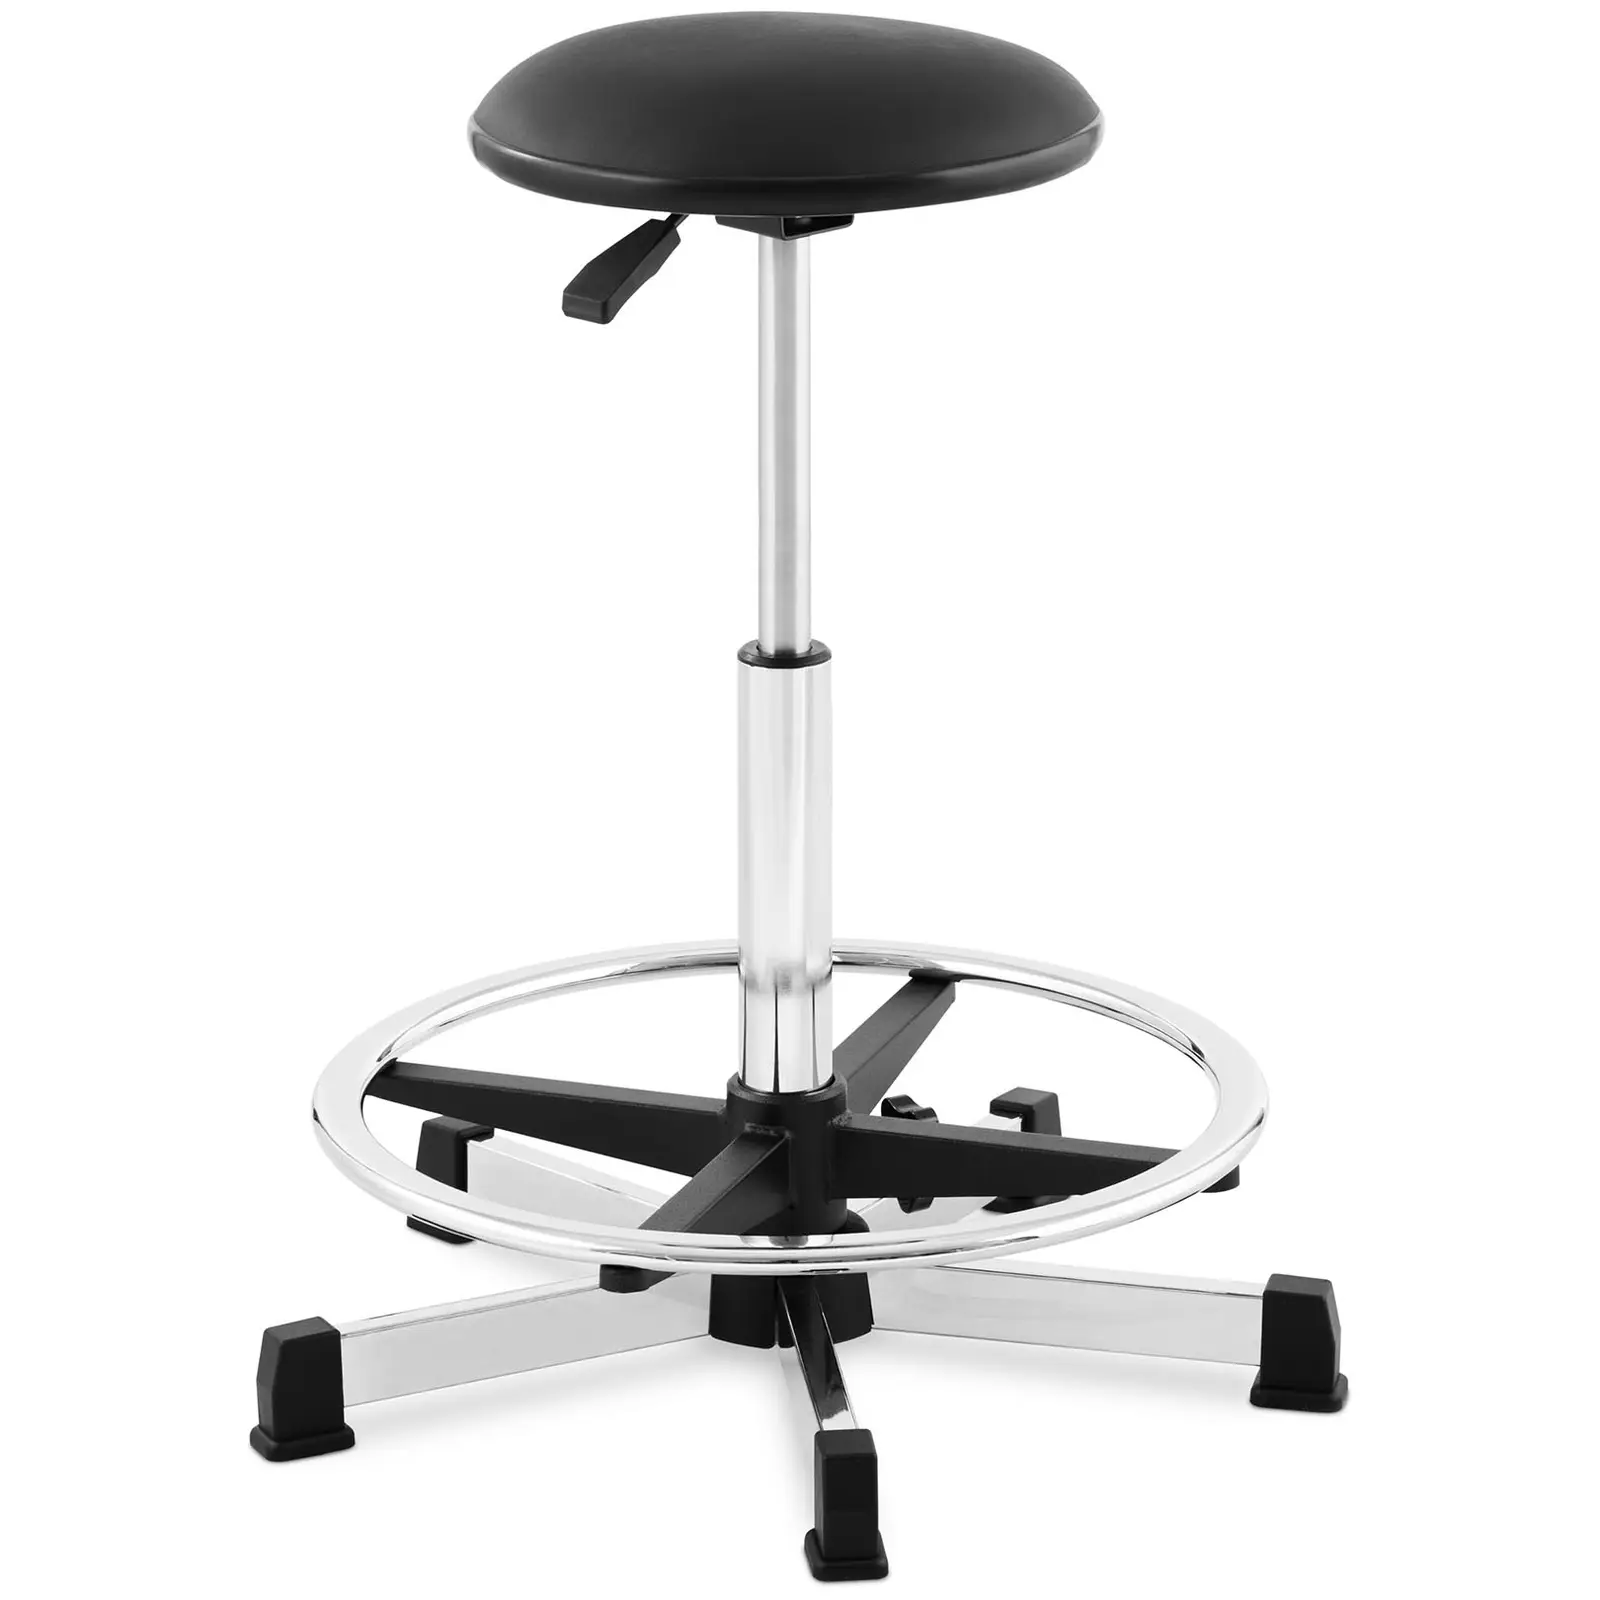 Kosmetický taburet 120 kg černý nožní kroužek výška nastavitelná v rozmezí 530–800 mm - Židle a taburety Fromm & Starck